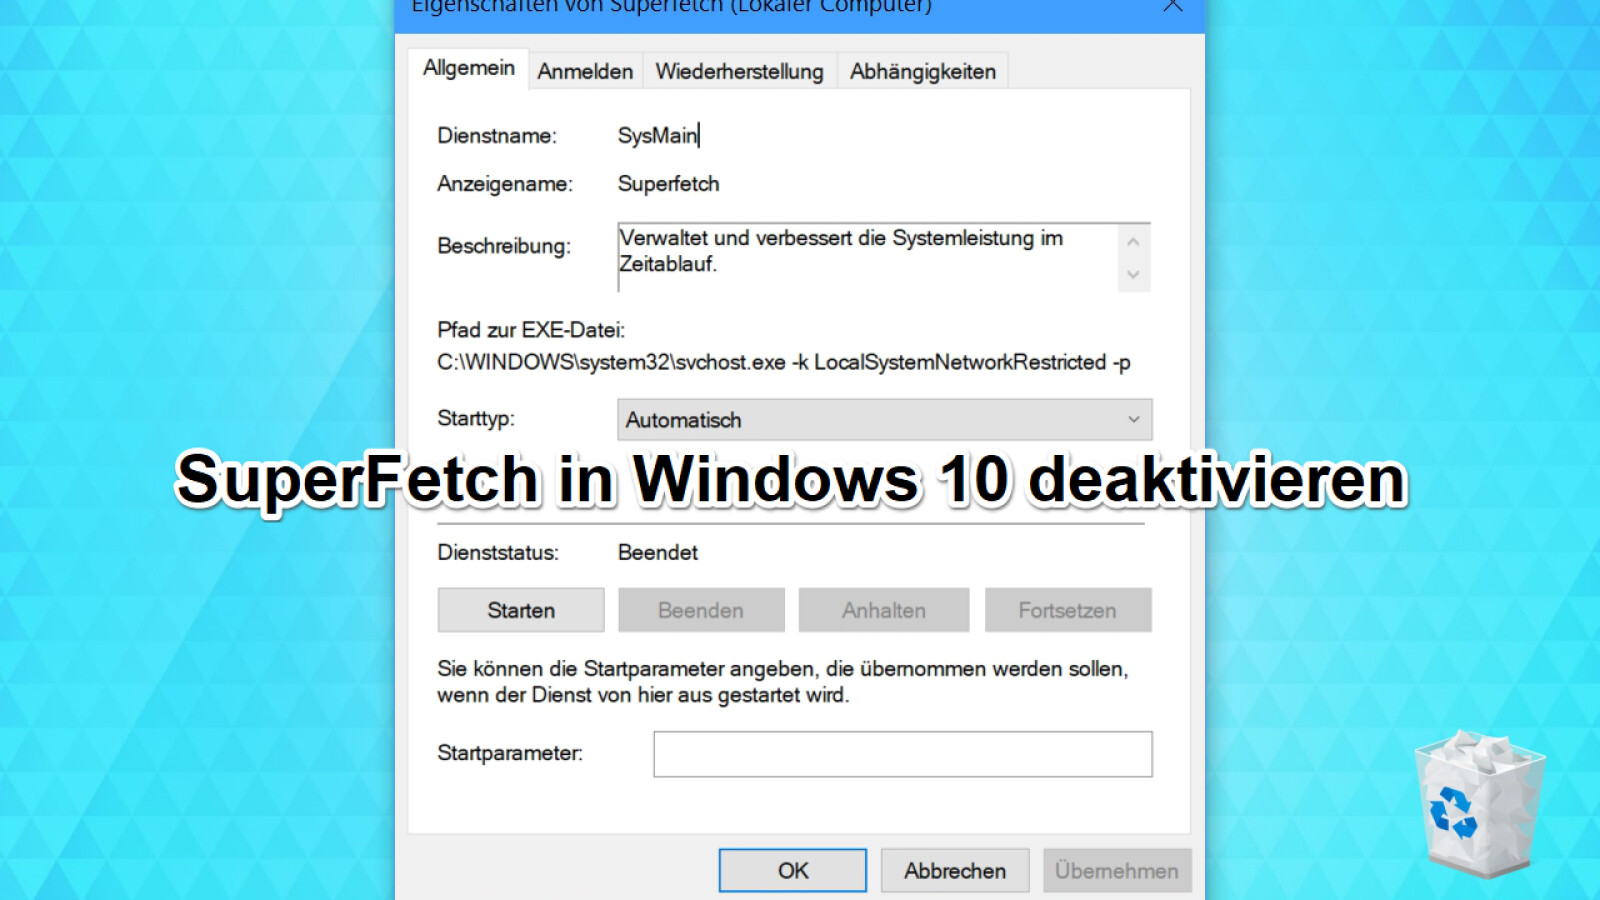 Superfetch Deaktivieren Windows 10